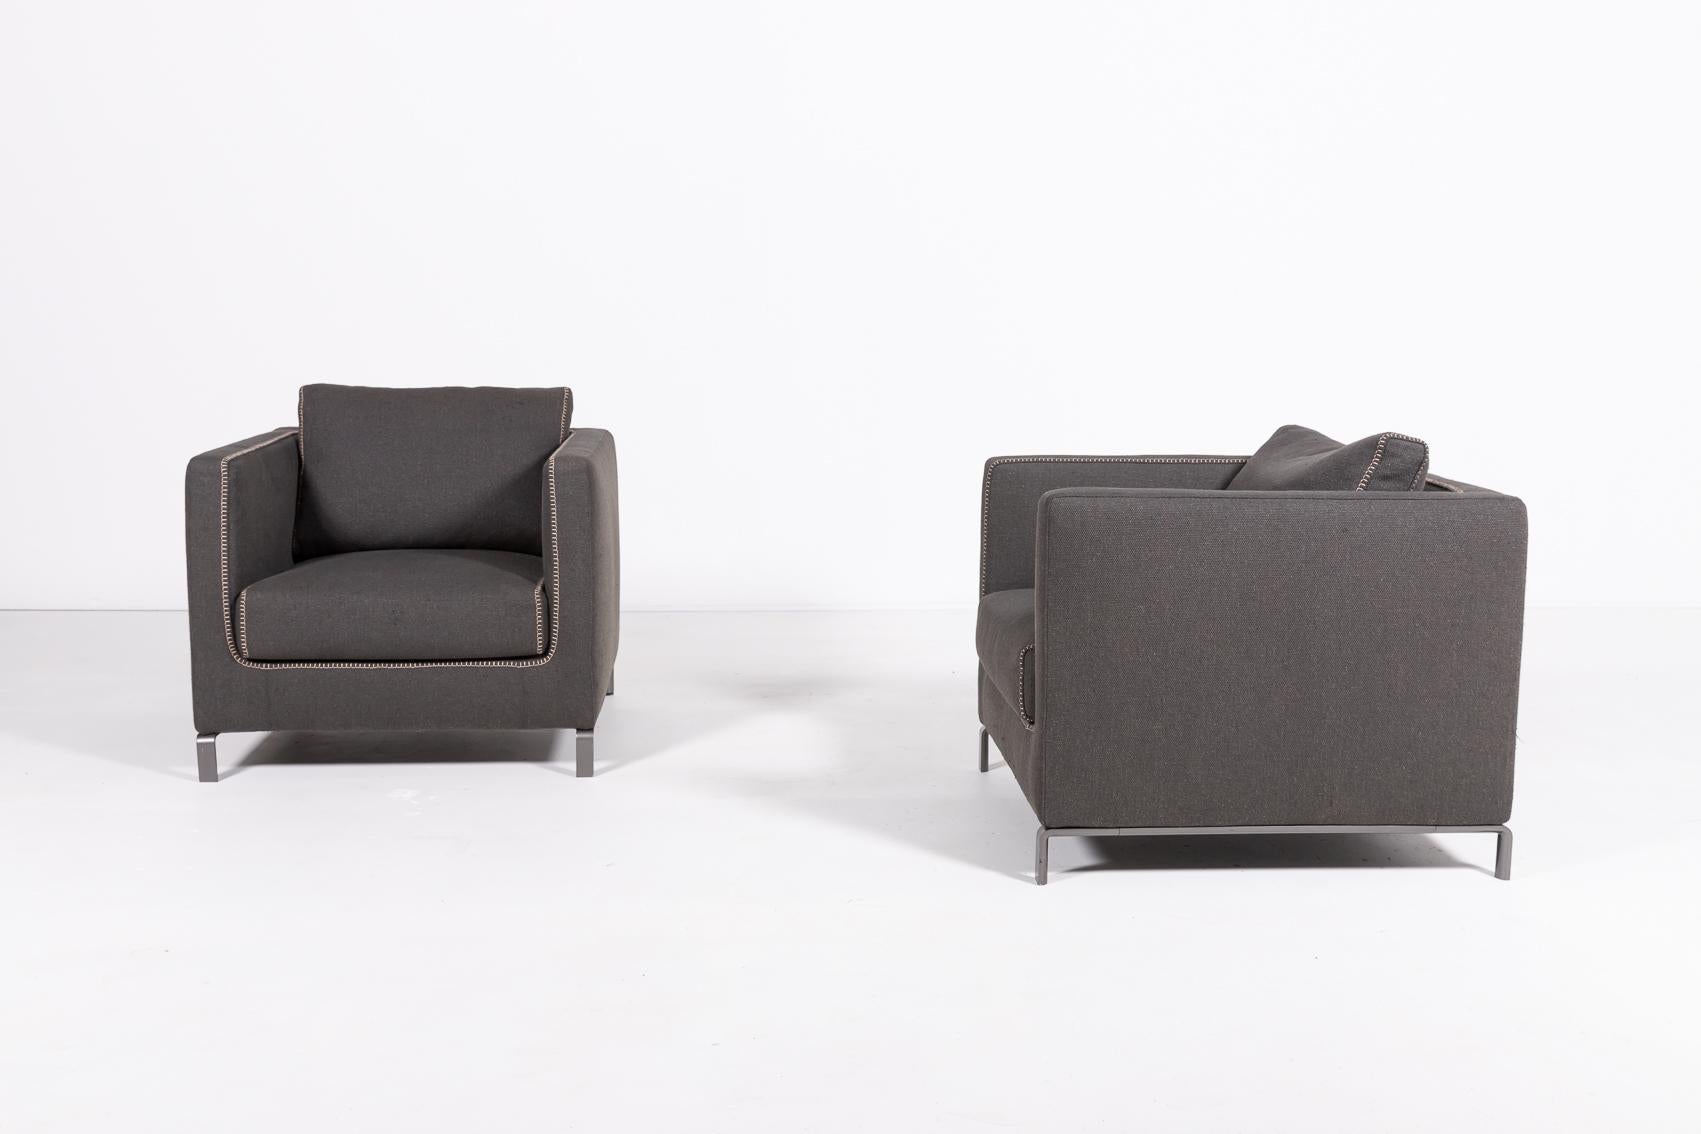 Ein Paar schöne Sessel mit grauem Wollbezug von B&B Italia von dem preisgekrönten Designer Antonio Citterio.

Eine erfolgreiche Designstrategie, die ein Gleichgewicht zwischen funktionalen und ästhetischen Merkmalen herstellt. Er zeichnet sich durch